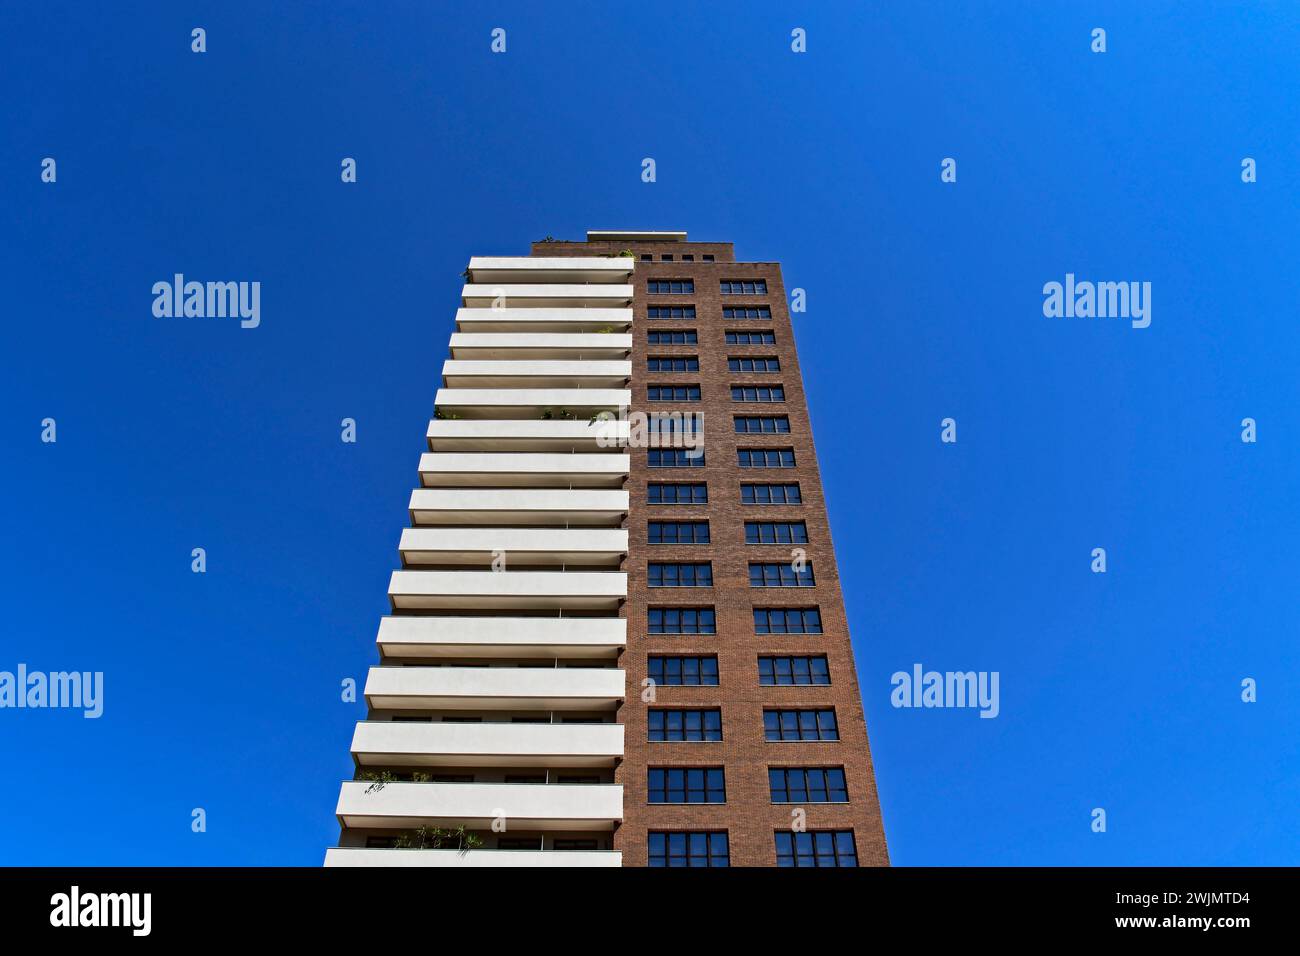 Residential building facade in Ribeirao Preto, Sao Paulo, Brazil Stock Photo